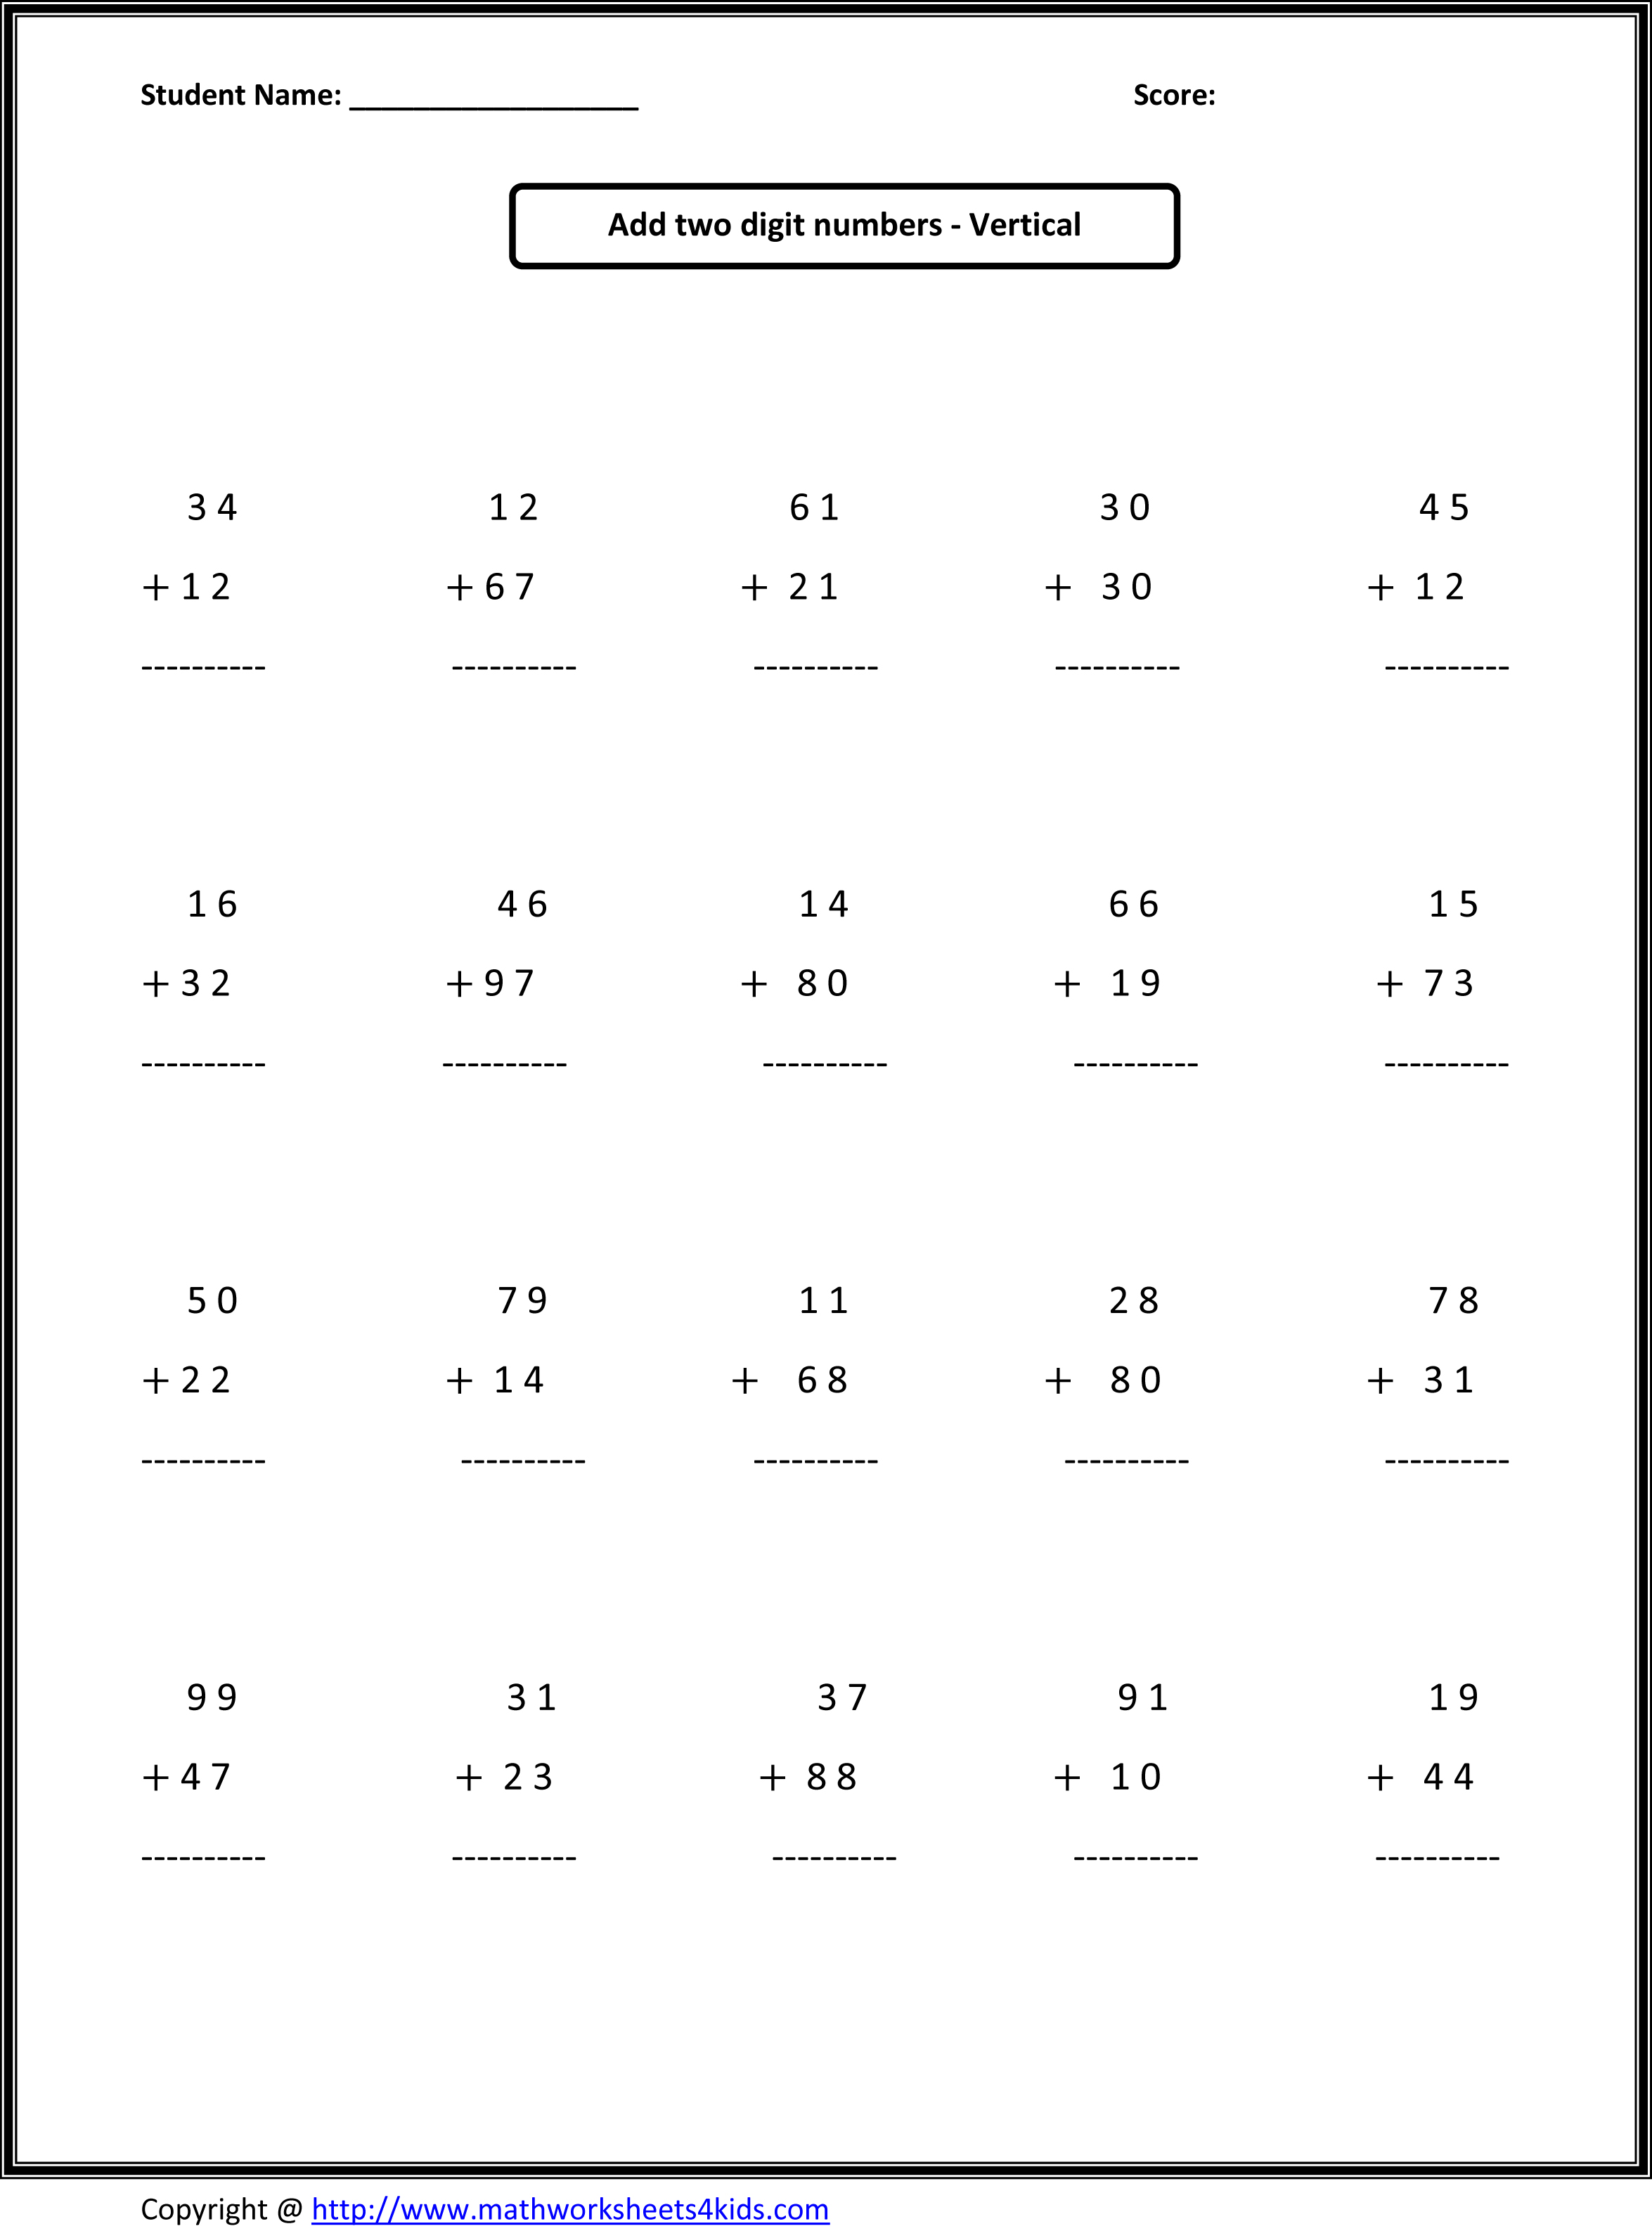 Math Addition Worksheets 2nd Grade Image